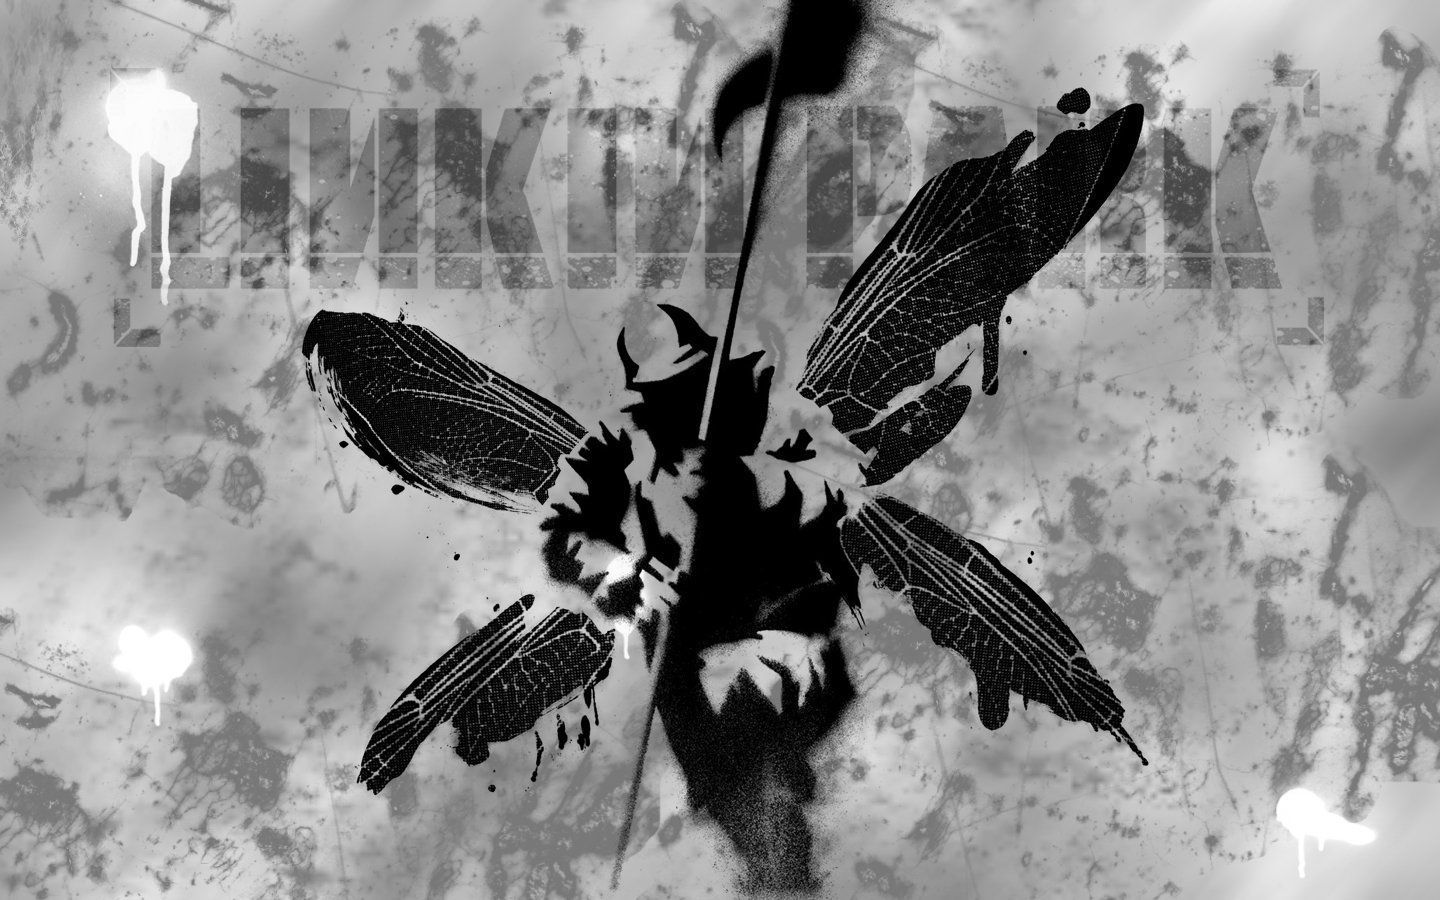 Linkin Park Hybrid wallpaper | 1440x900 | 251906 | WallpaperUP